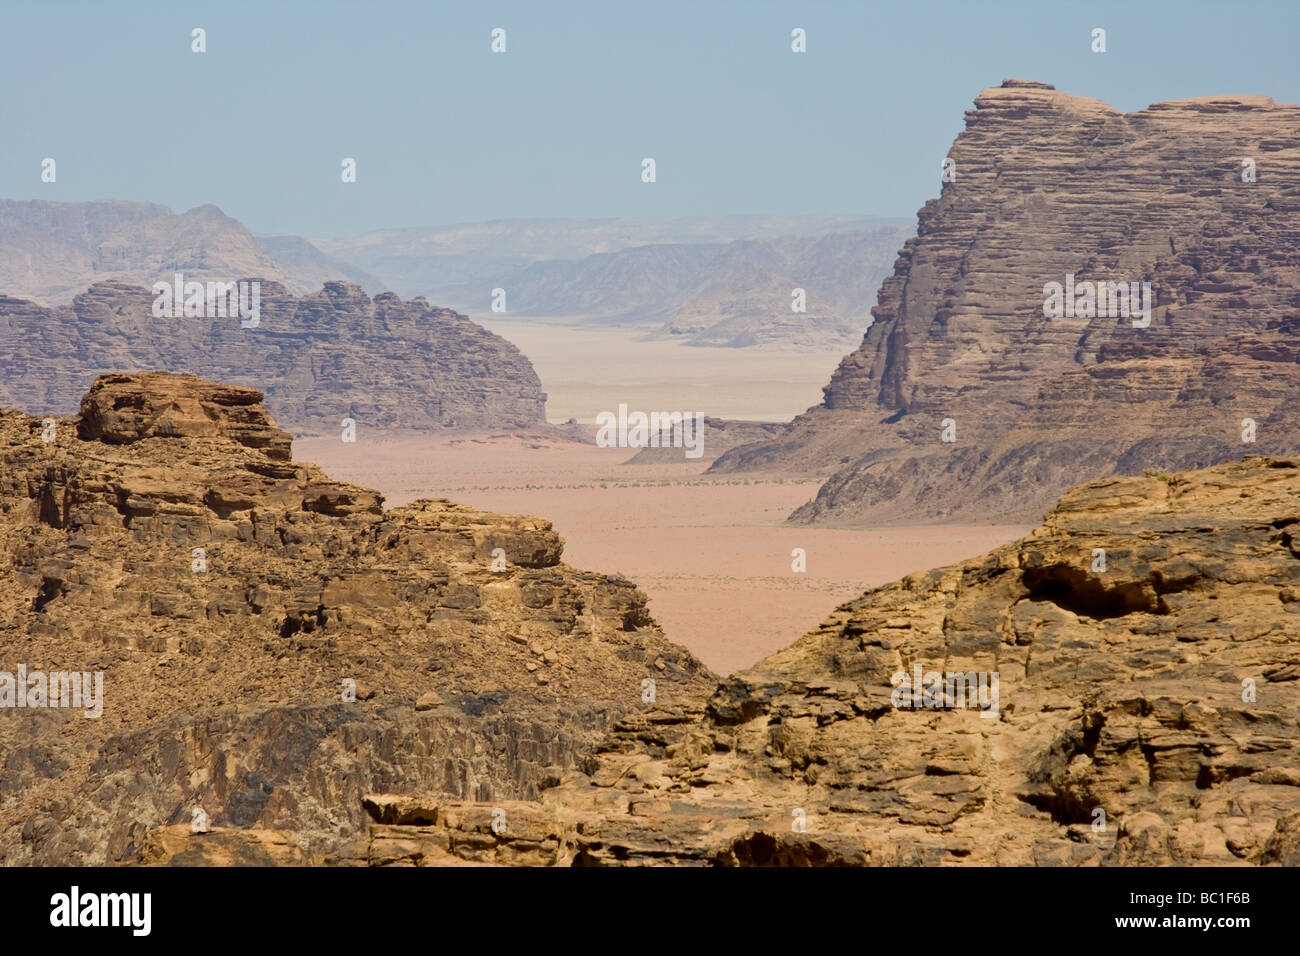 Wadi Rum in Jordan Stock Photo